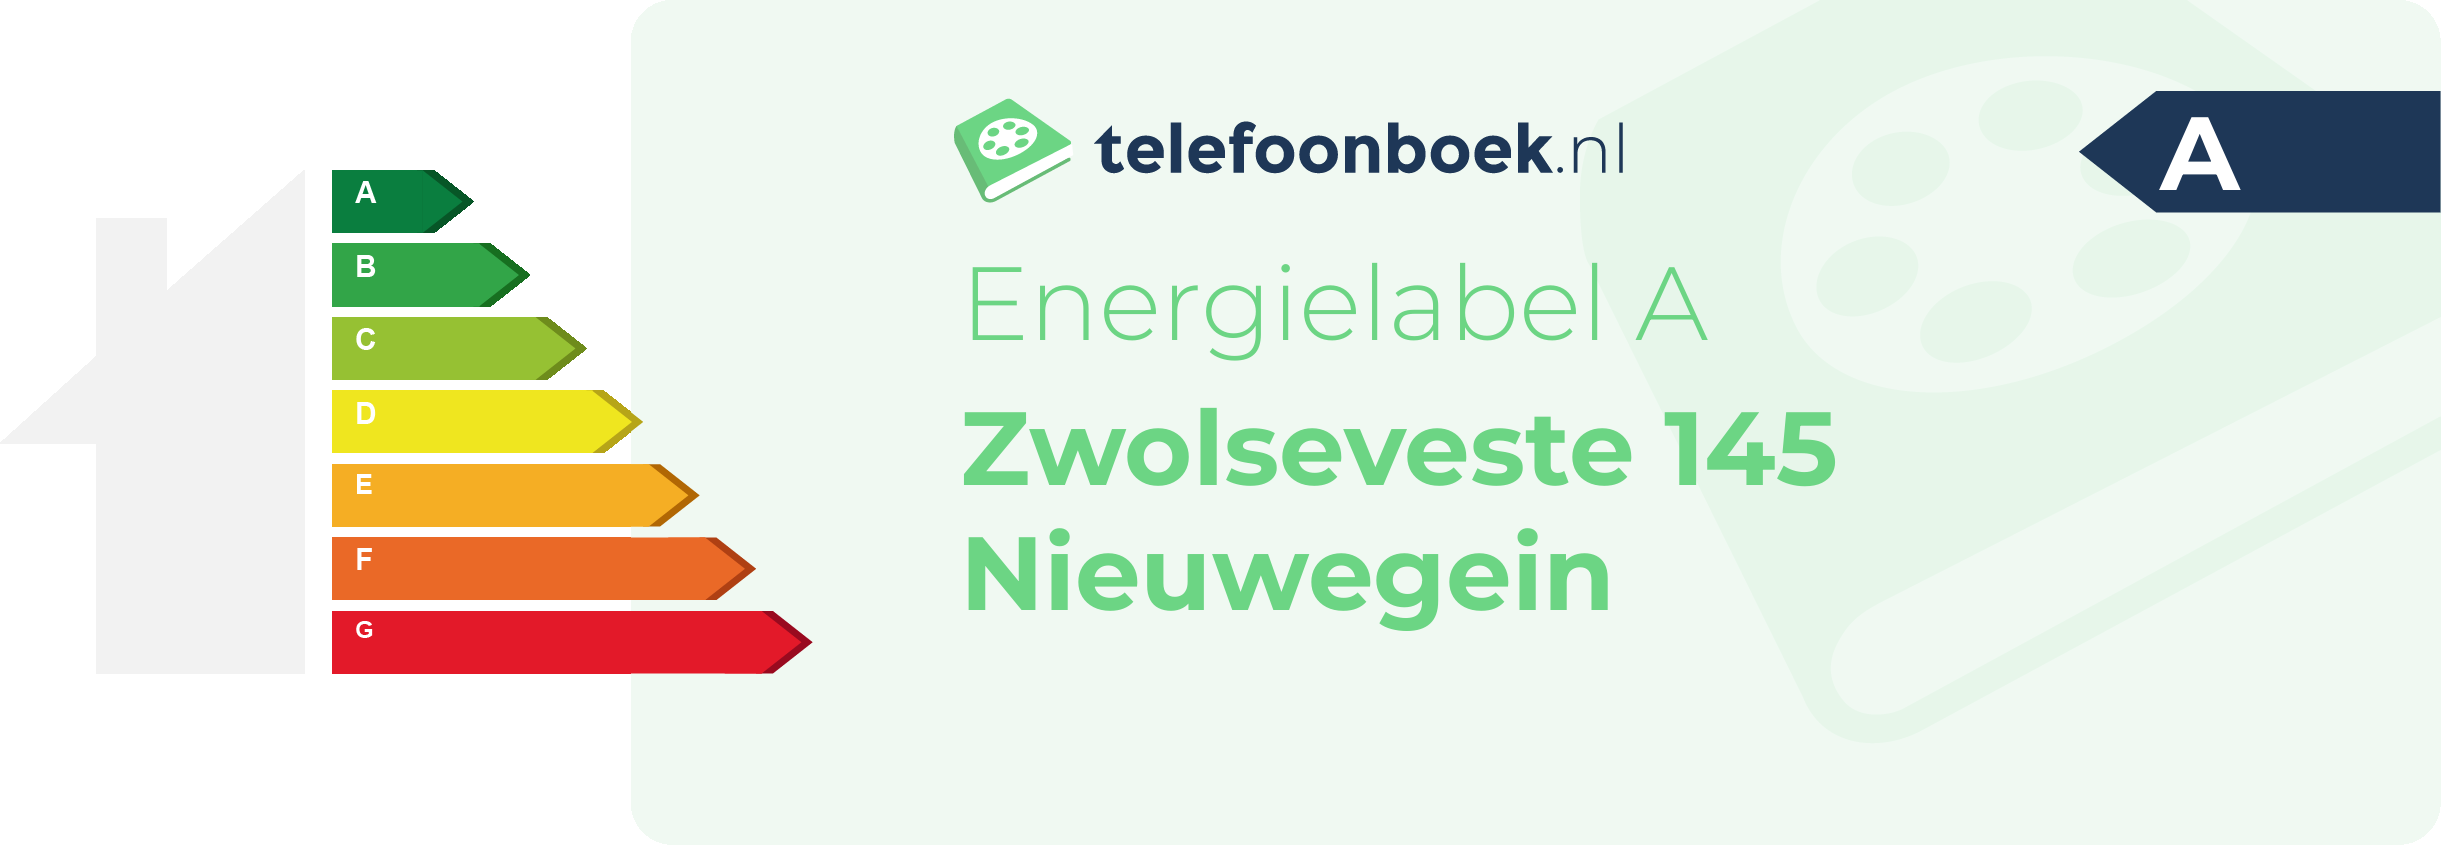 Energielabel Zwolseveste 145 Nieuwegein